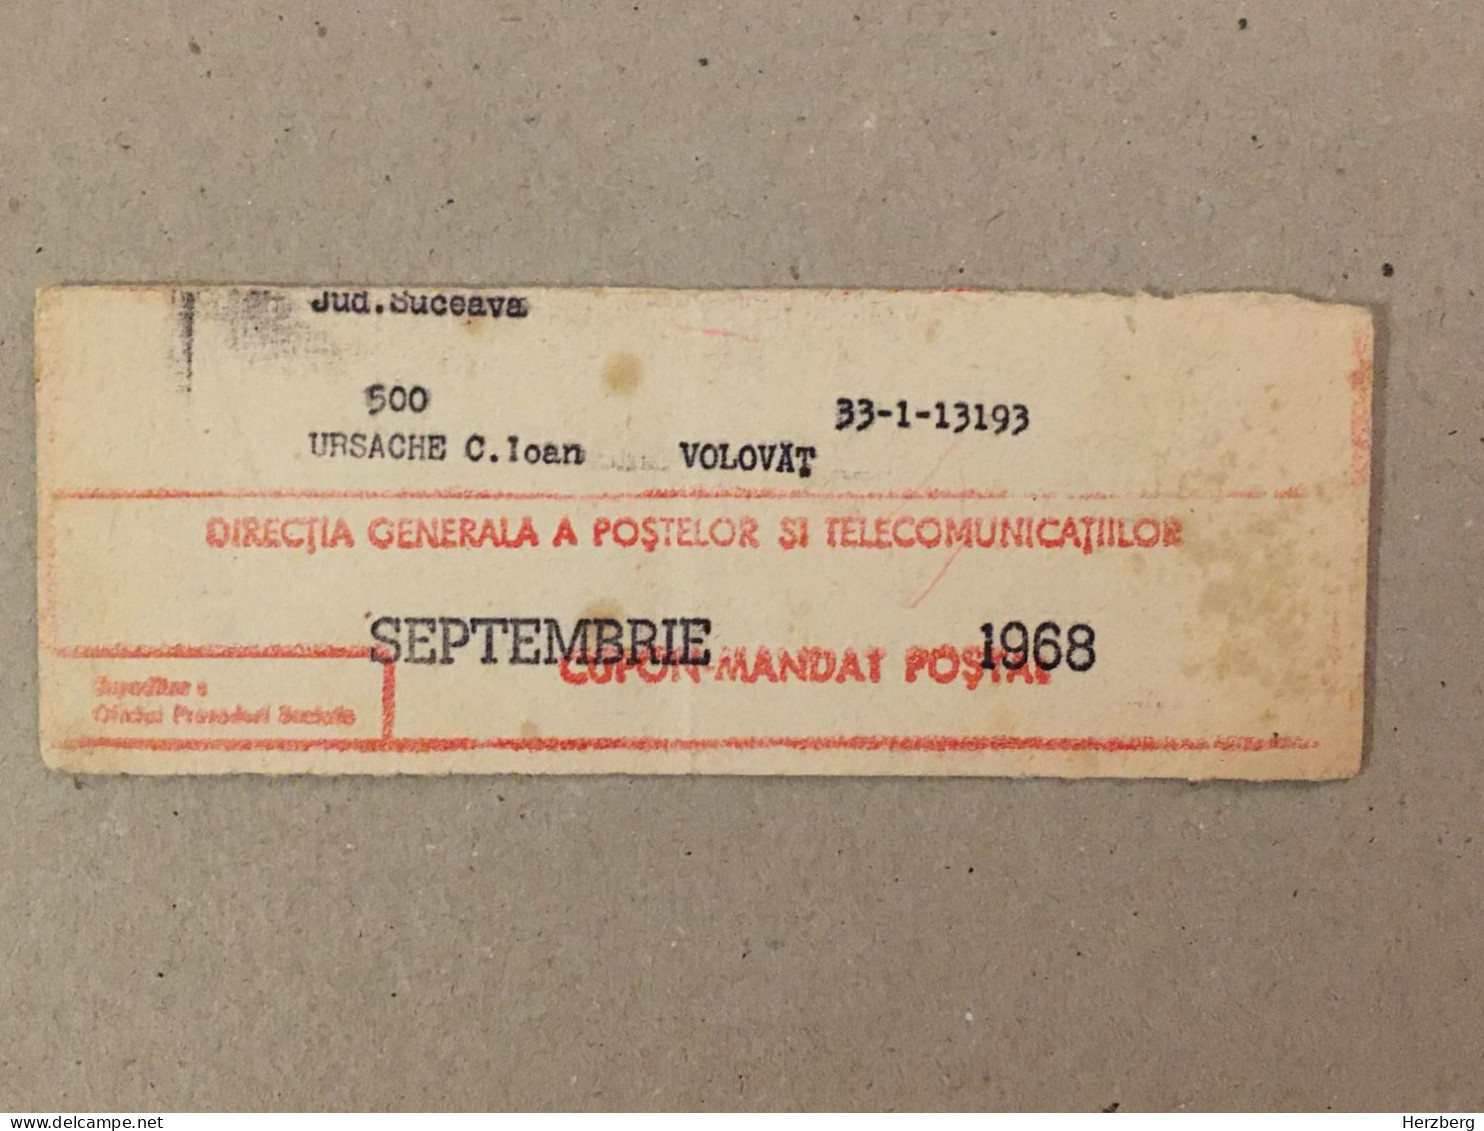 Romania Rumanien Roumanie - Cupon Mandat Postal Coupon Mandate Postauftrag - Suceava 1968 - Storia Postale